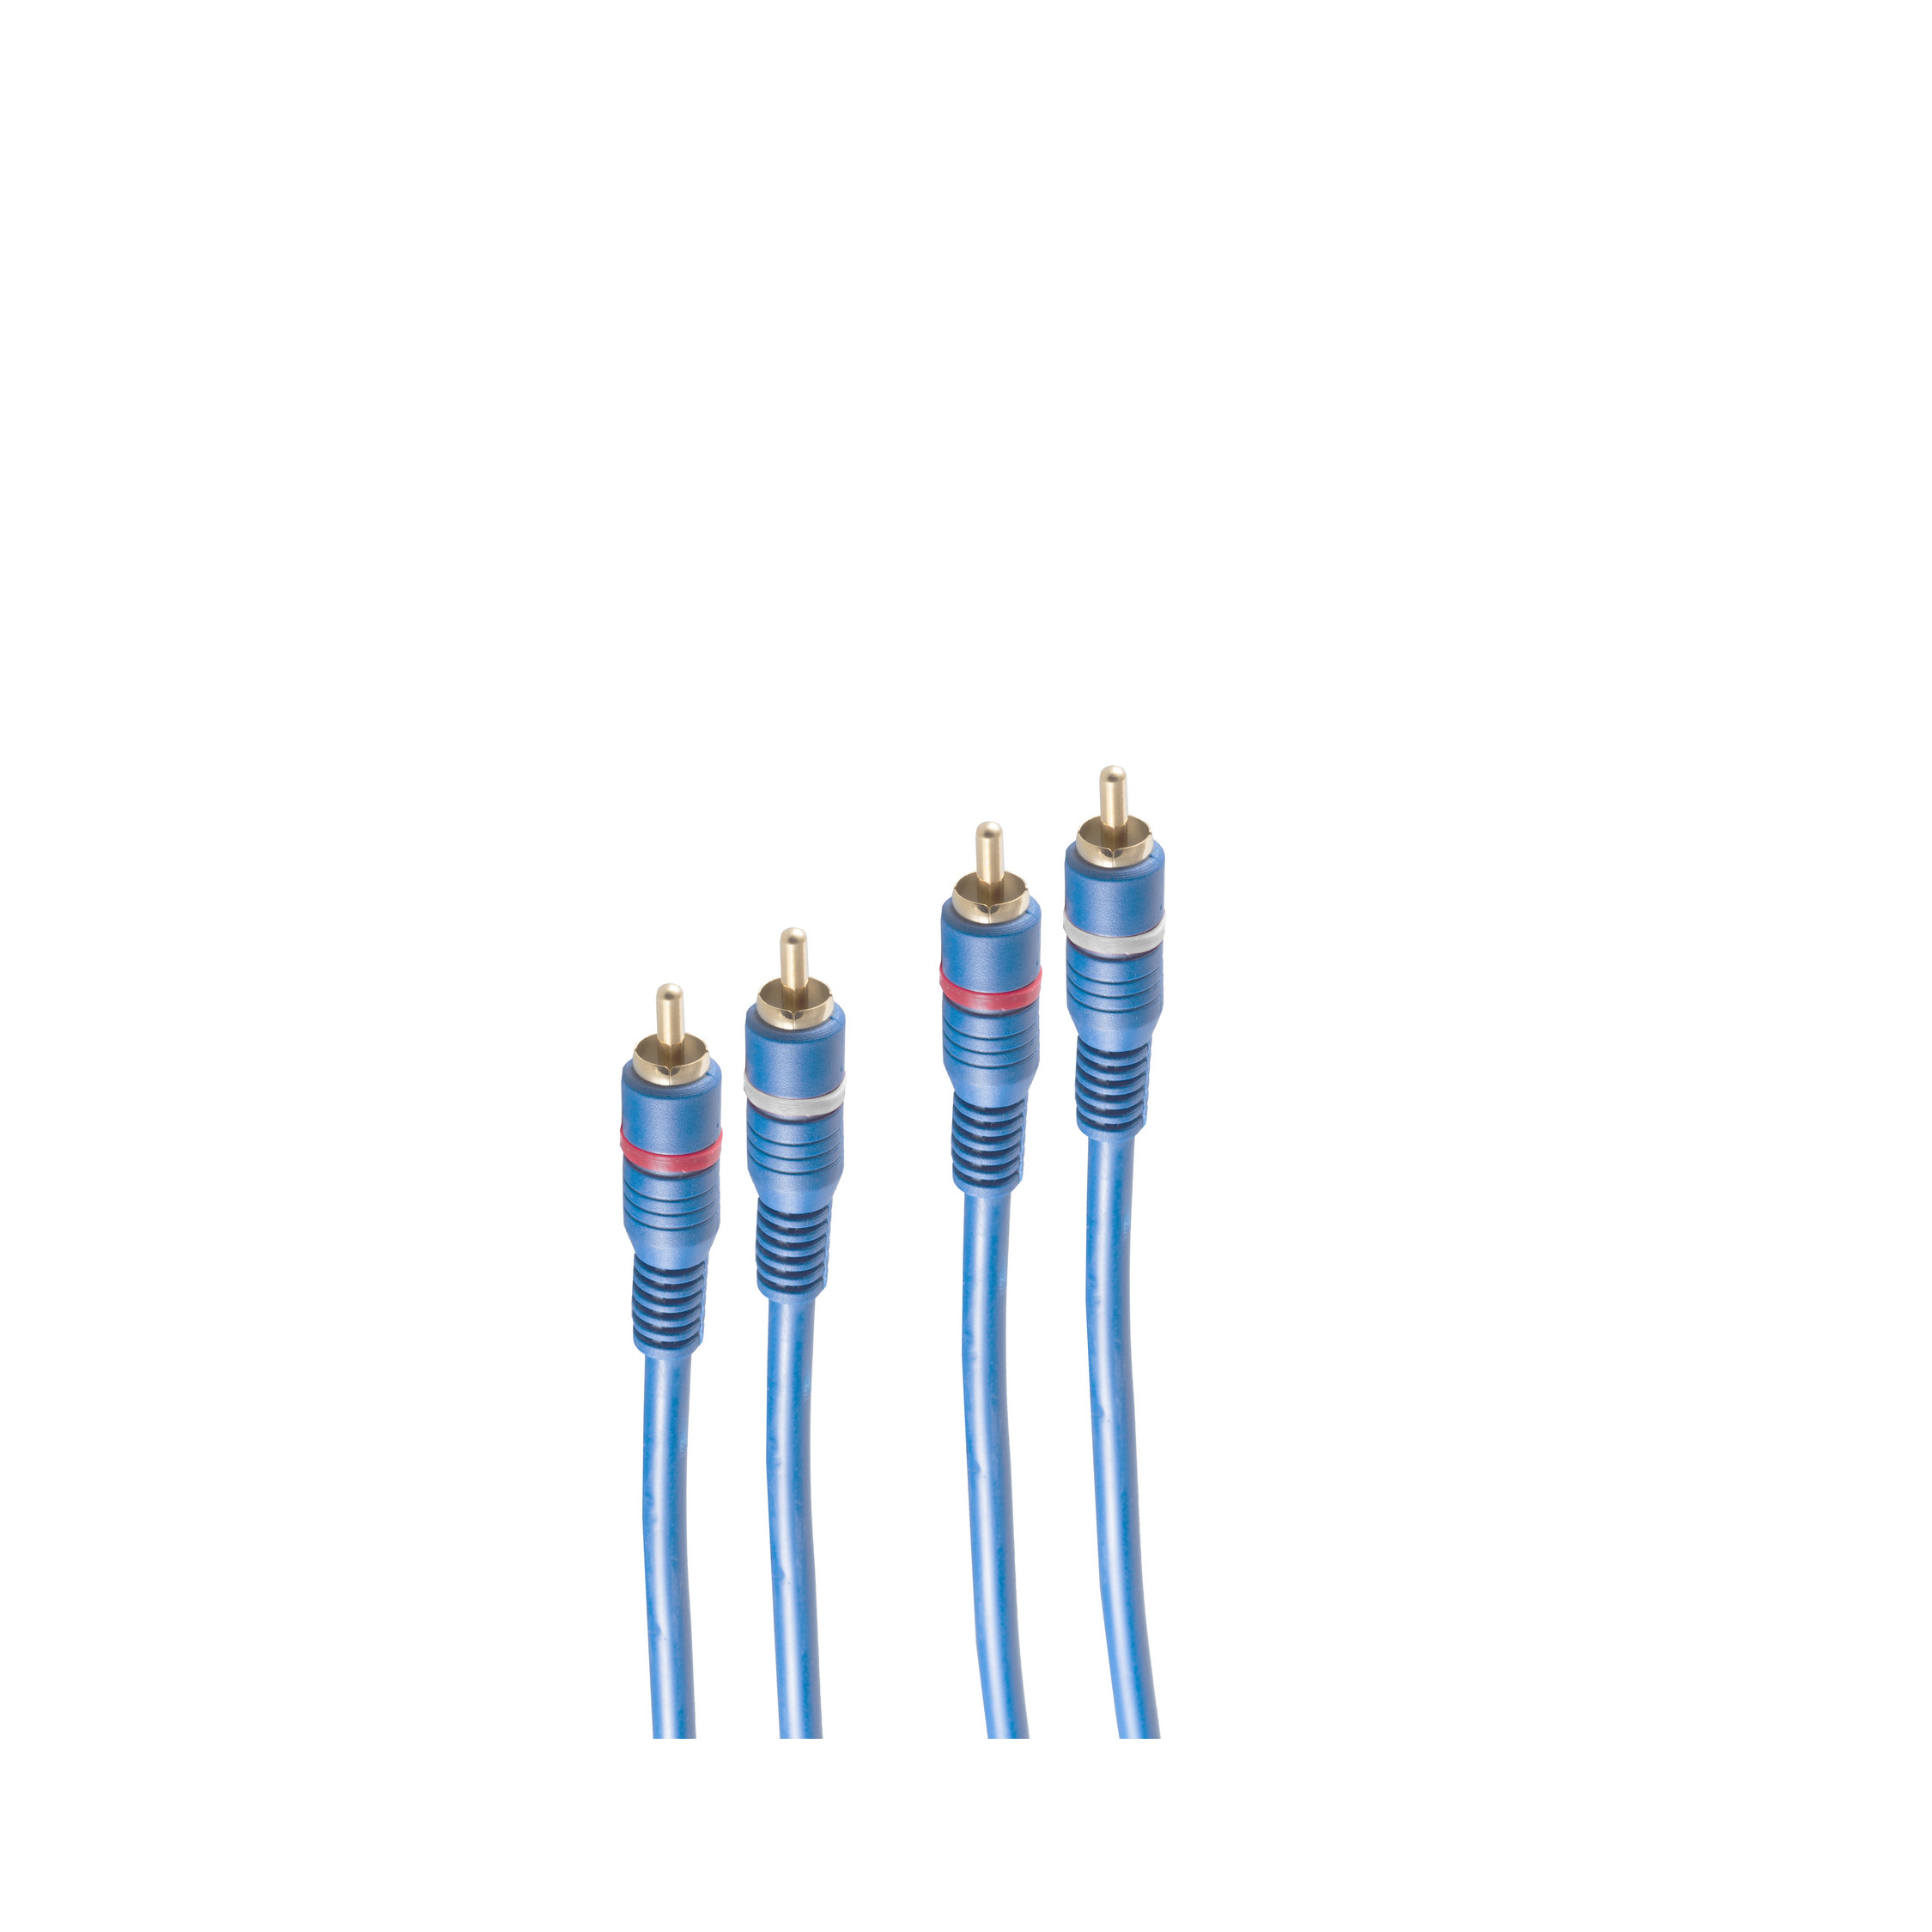 2 Stecker Stecker/ 2 blau Kabel 5m, m Cinchkabel SHIVERPEAKS 5 TWIN Cinchkabel,